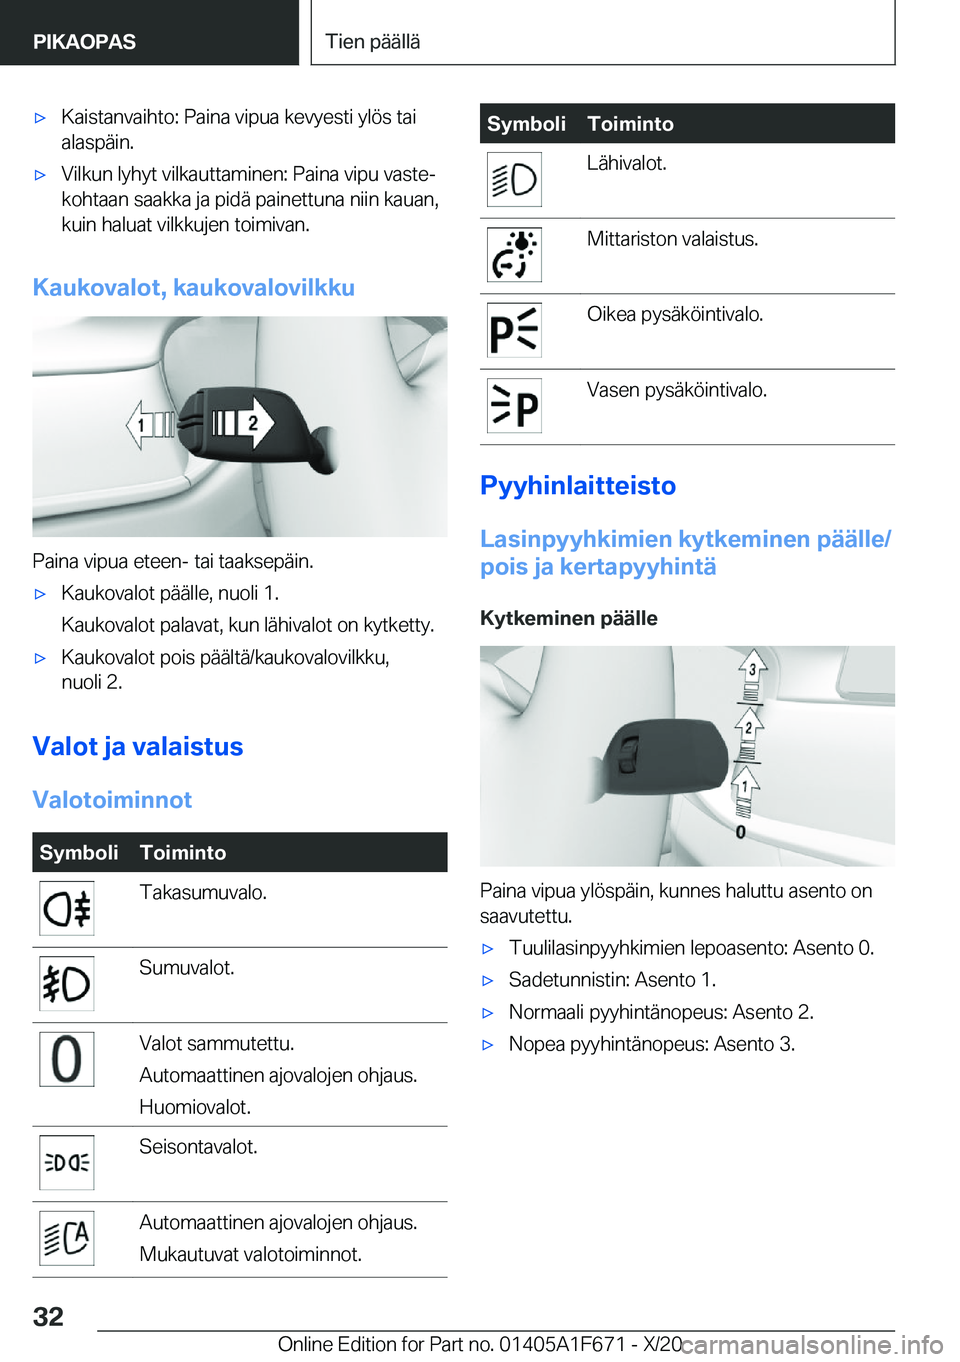 BMW X4 2021  Omistajan Käsikirja (in Finnish) 'x�K�a�i�s�t�a�n�v�a�i�h�t�o�:��P�a�i�n�a��v�i�p�u�a��k�e�v�y�e�s�t�i��y�l�